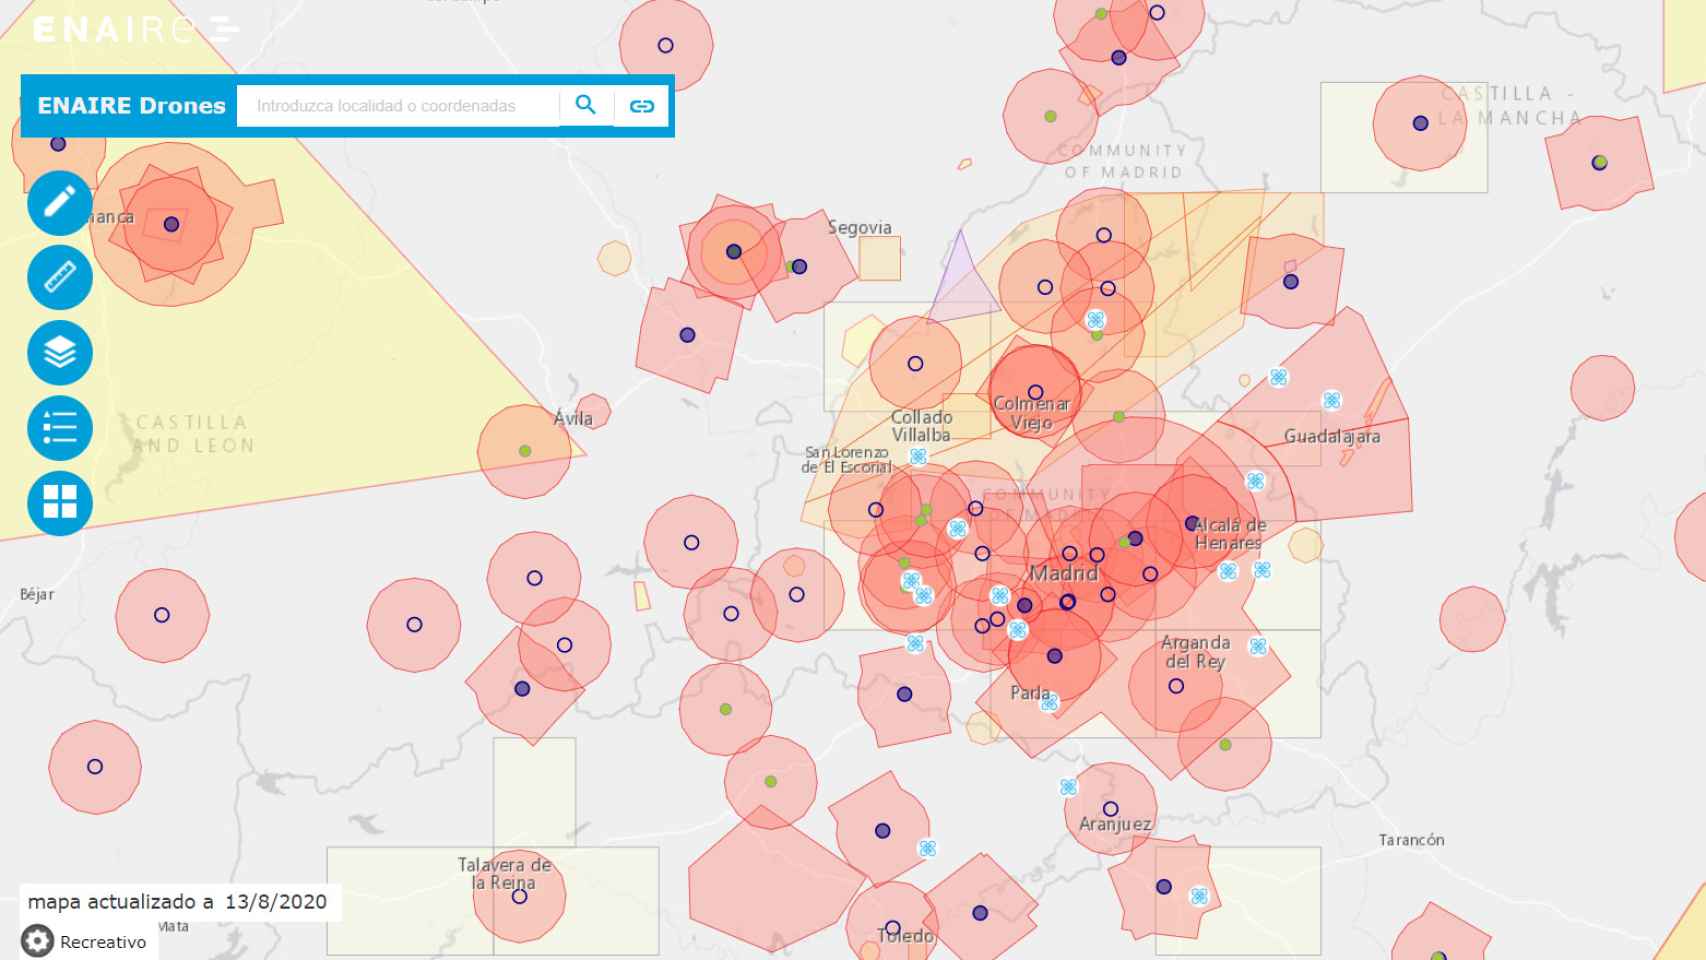 Mapa de Enaire sobre el vuelo de drones